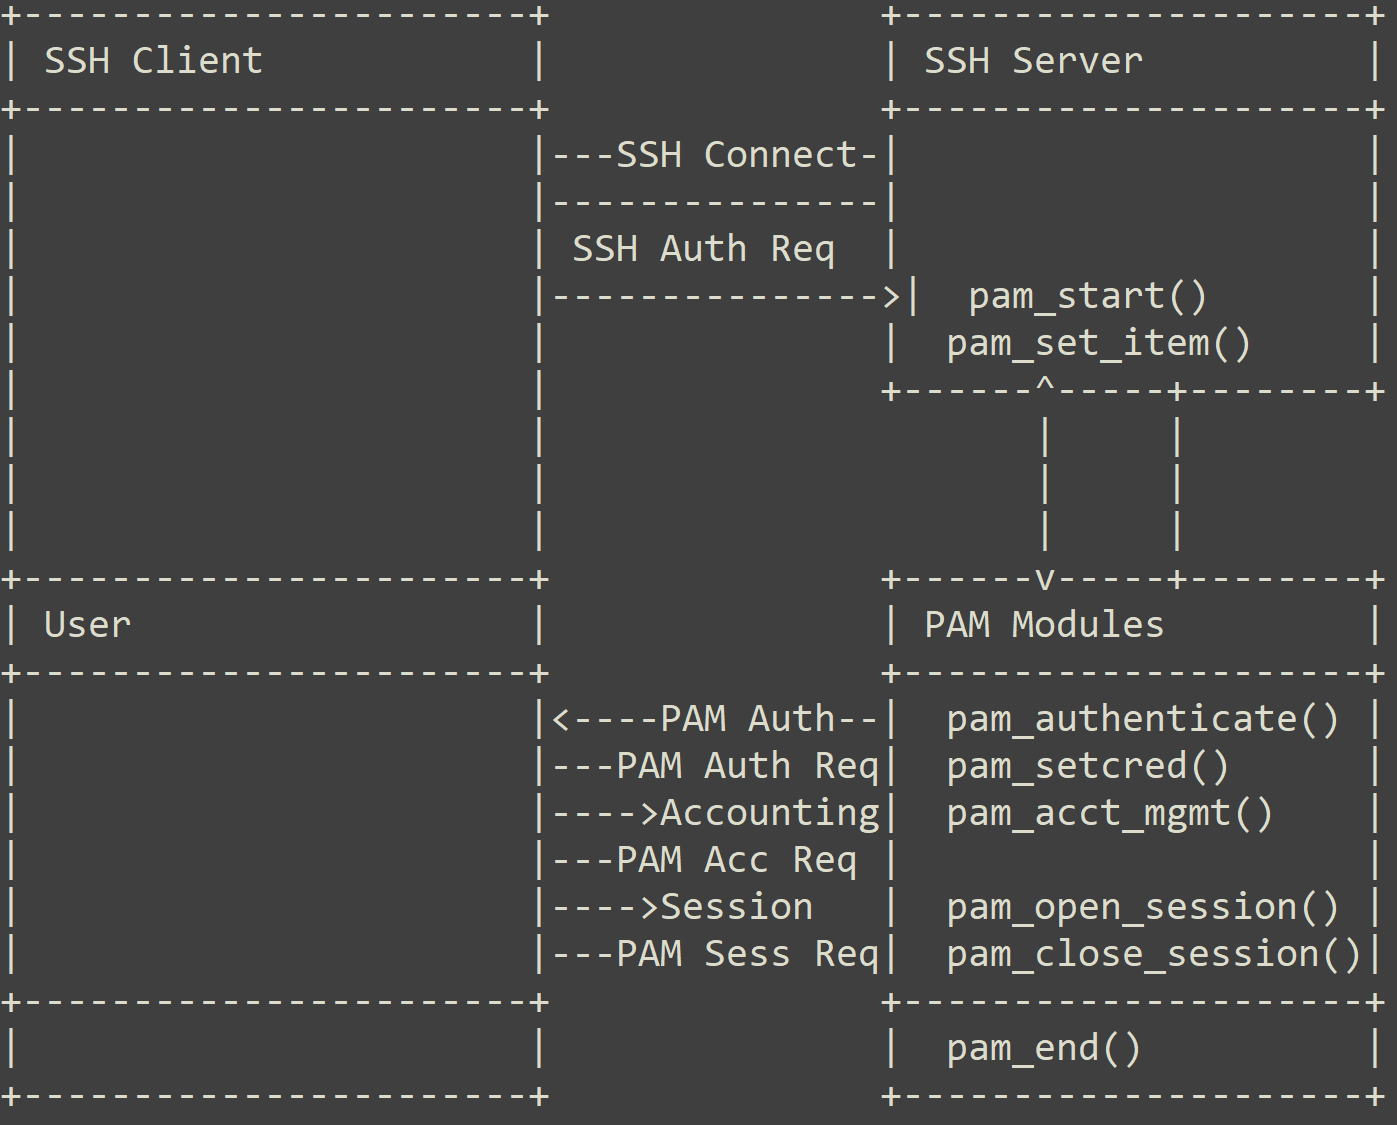 画像 1 は、PAM を使った SSH 認証プロセスのフレームワークです。SSH クライアントが SSH サーバーに接続し、そこからユーザーを認証する PAM モジュールへとプロセスが流れていきます。 